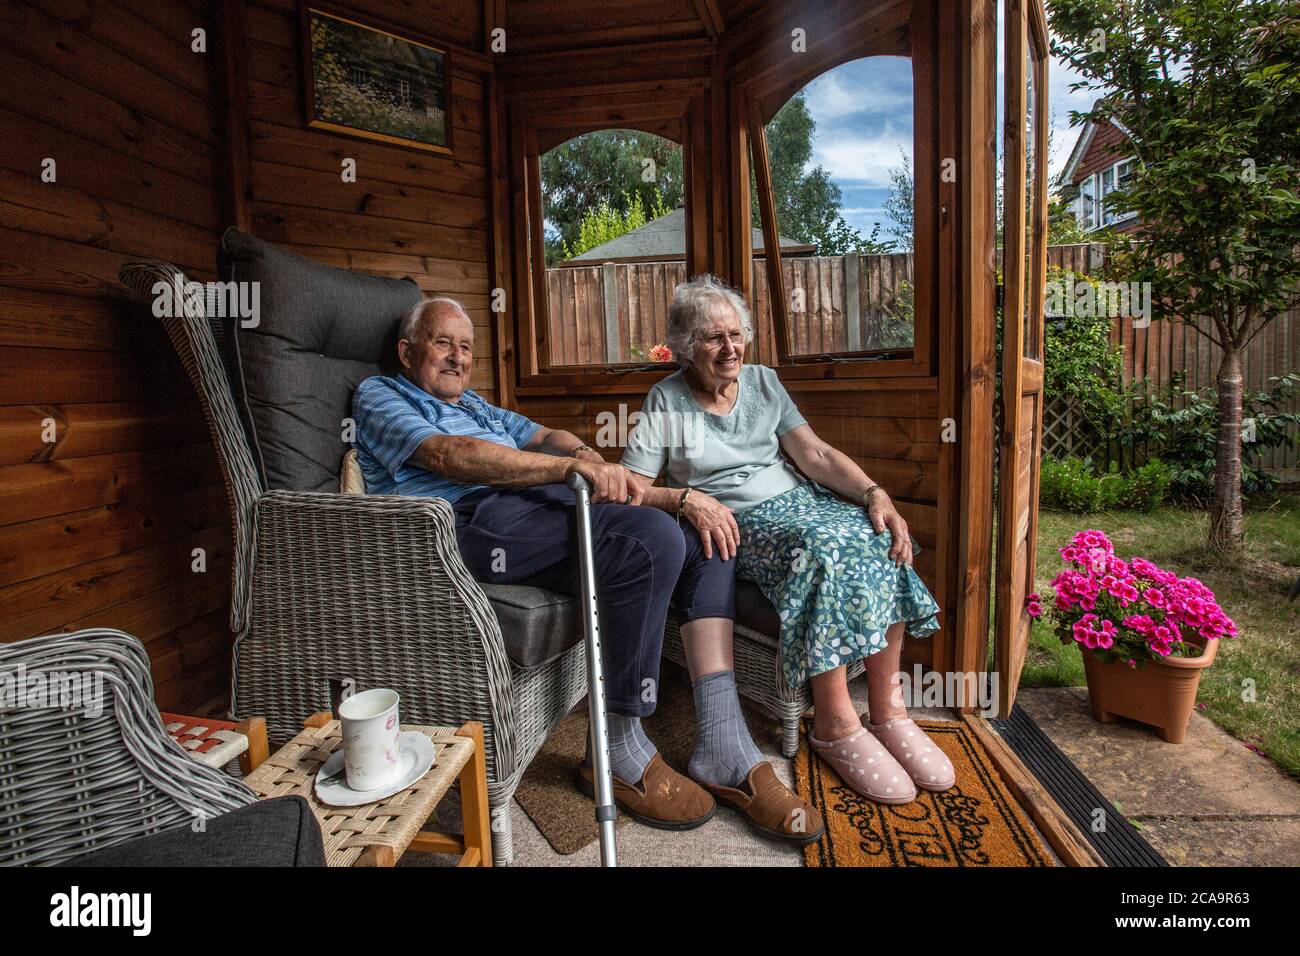 Coppie anziane negli anni 80 che si godono il caldo clima estivo nella loro casa estiva giardino, Inghilterra, Regno Unito Foto Stock